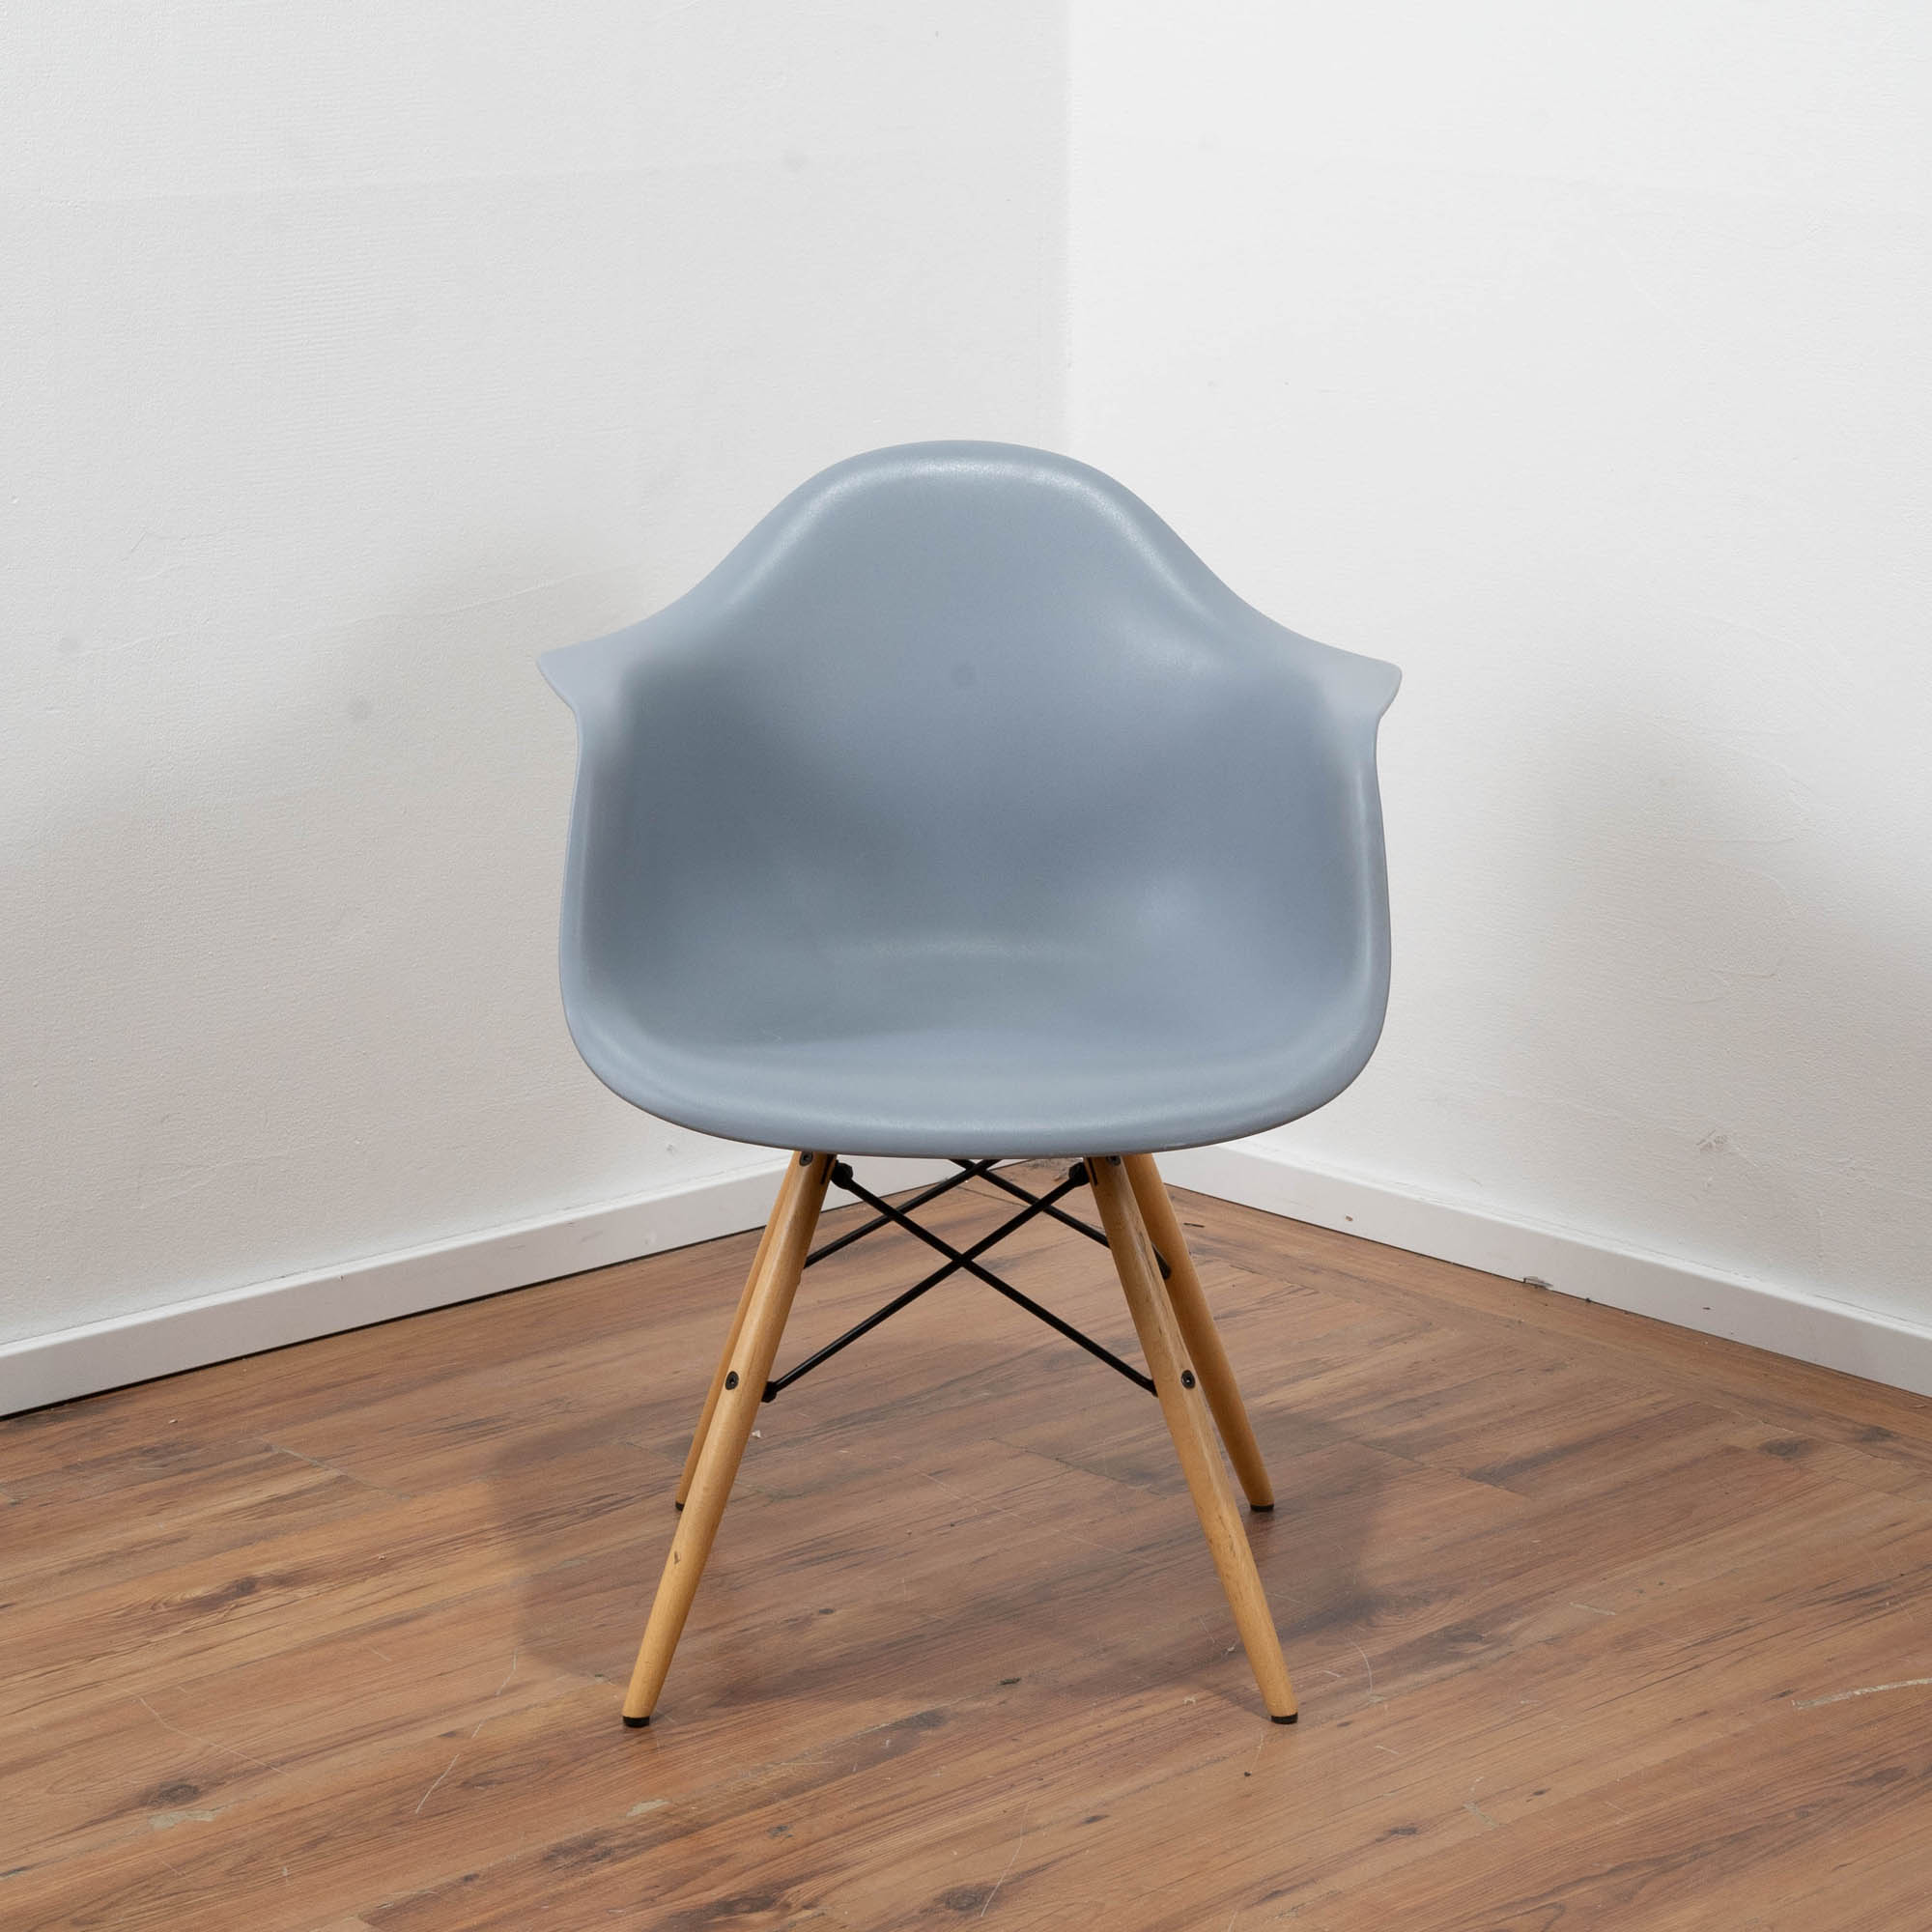 Schalensitz Stuhl Kunststoff hellblau - 4-Fußgestell Buche